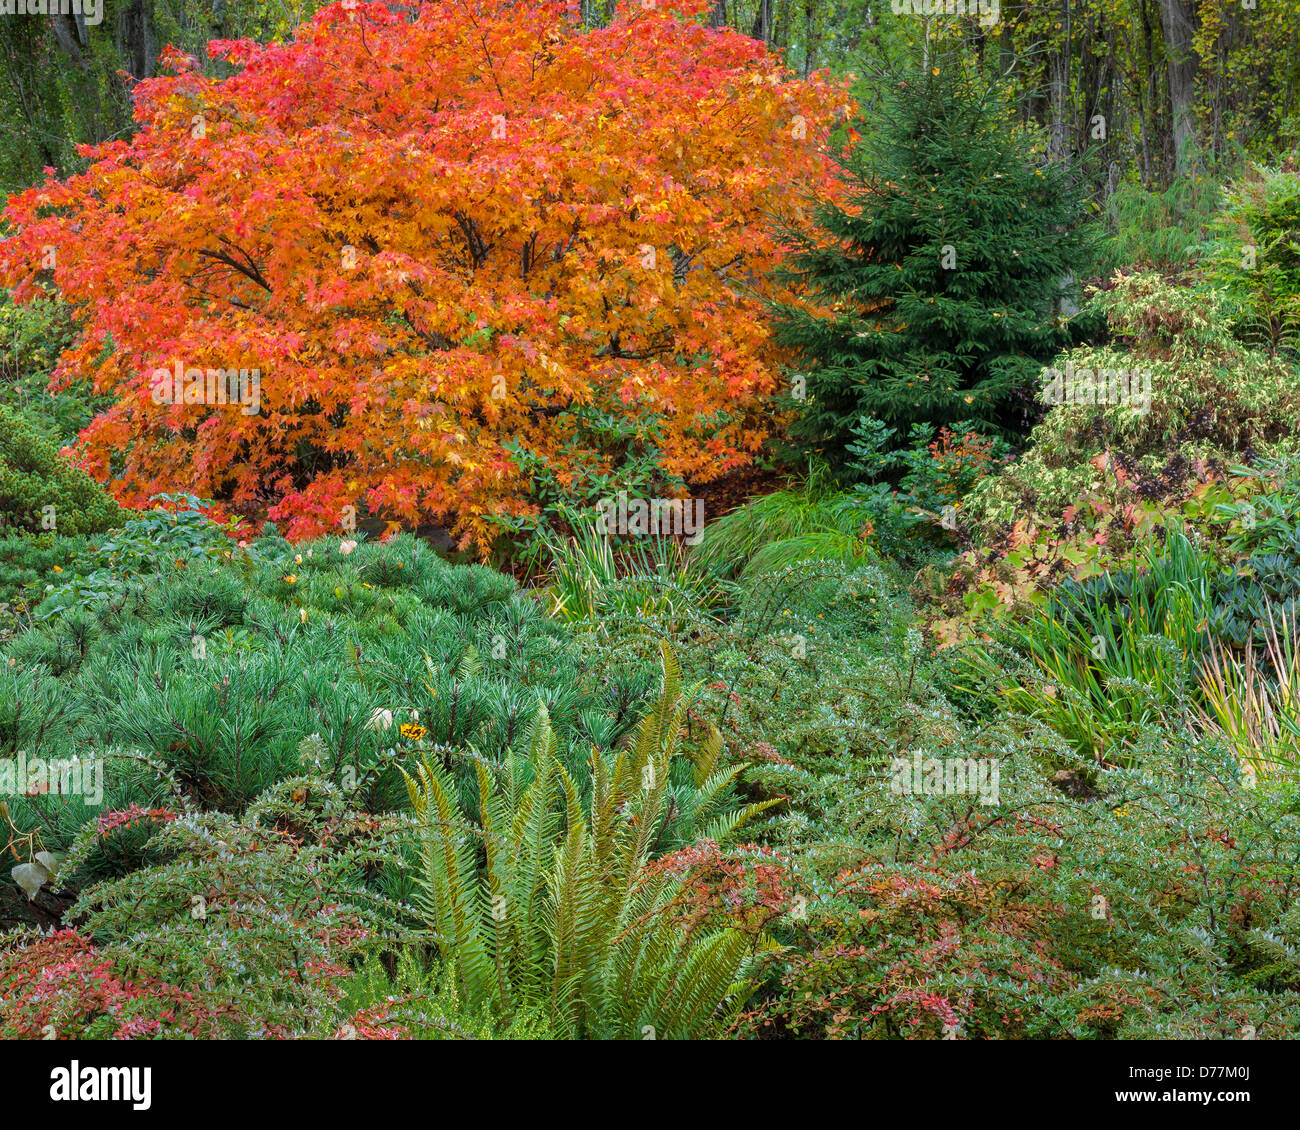 Giardino Kubota, Seattle, WA: acero giapponese con la caduta delle foglie con bassa crescita crespino, un pino snall e spada di felci Foto Stock